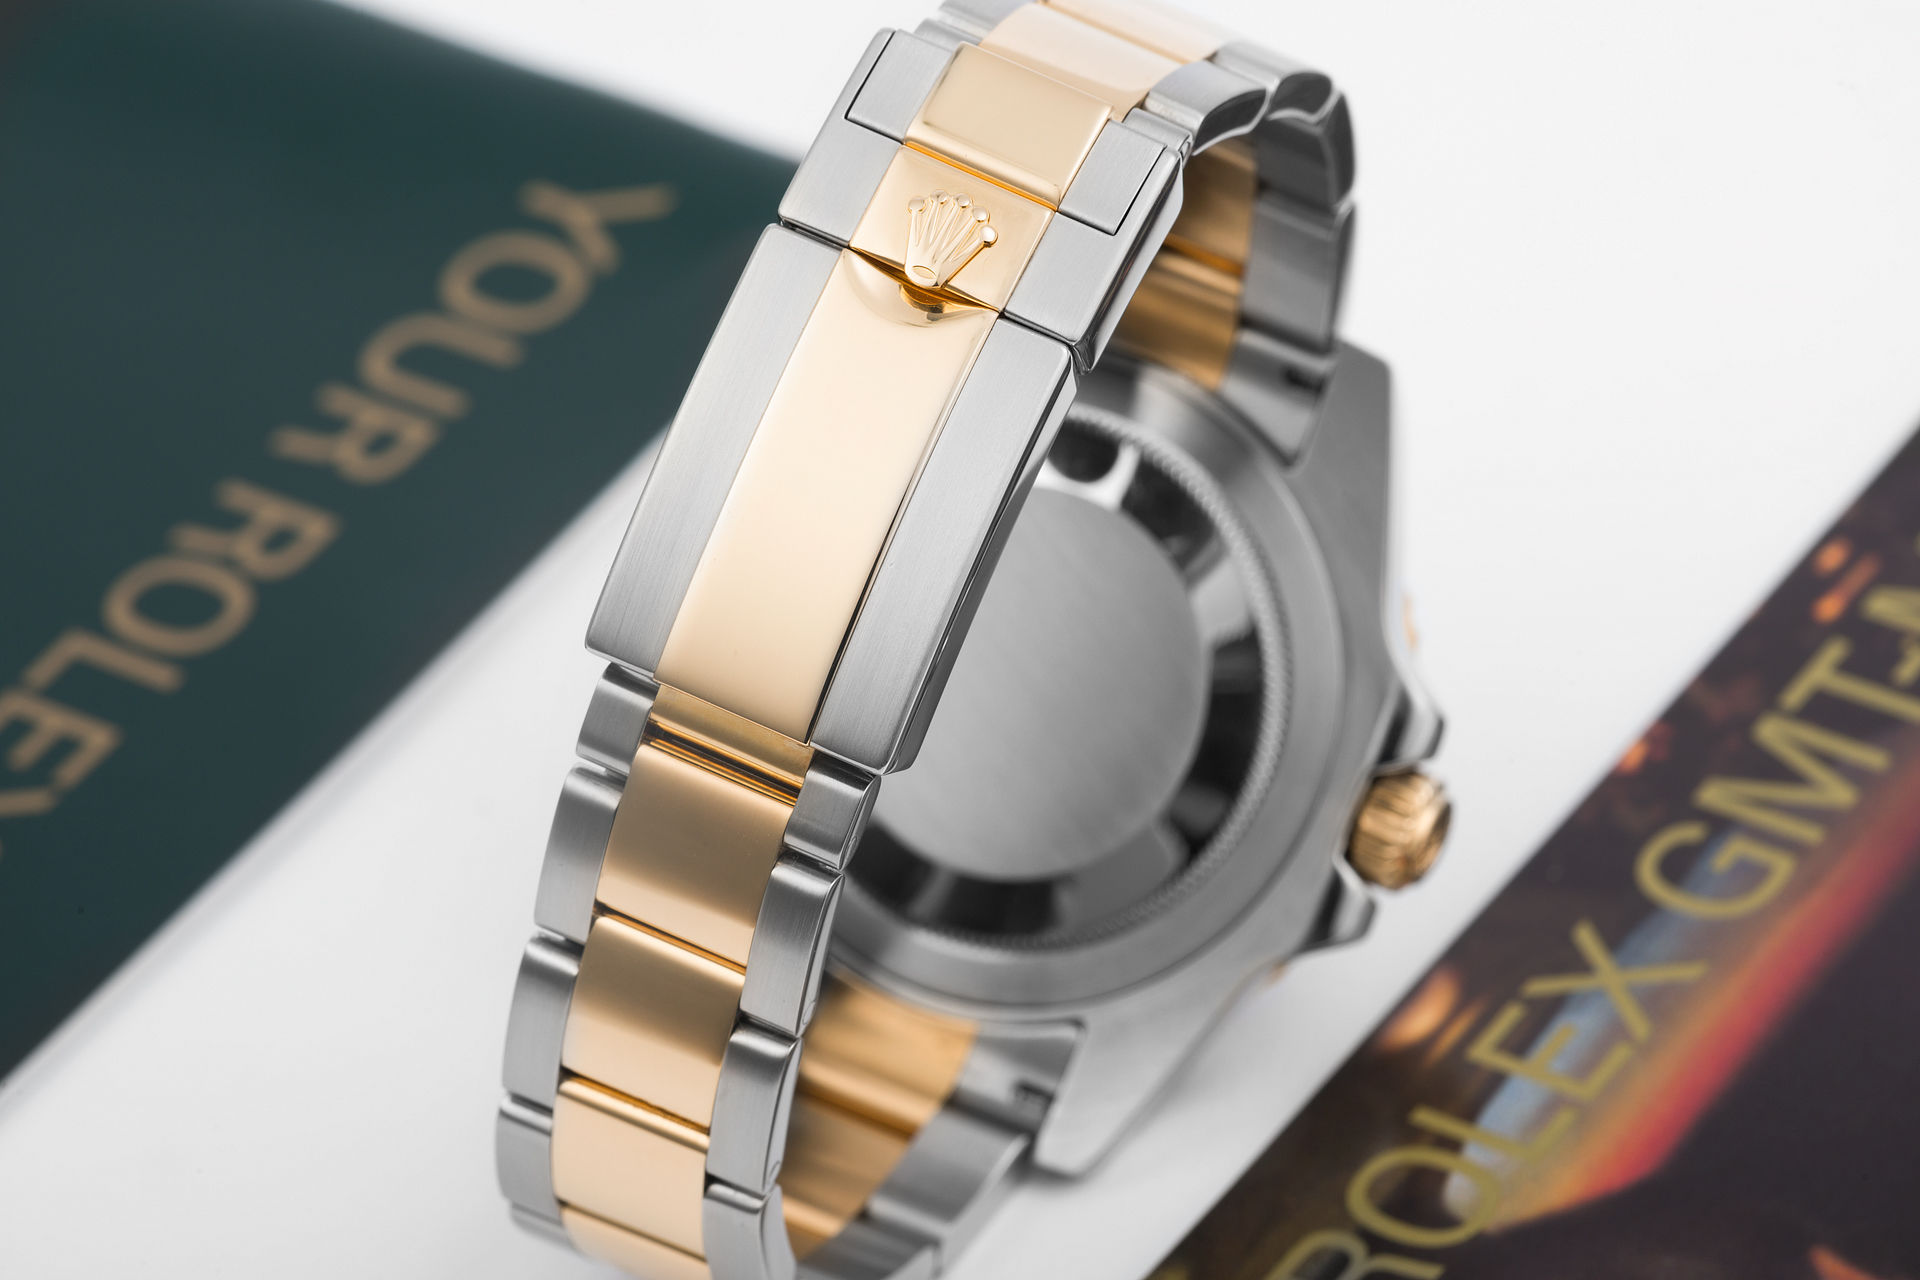 ref 116713LN | Gold & Steel 'Cerachrom' | Rolex GMT-Master II